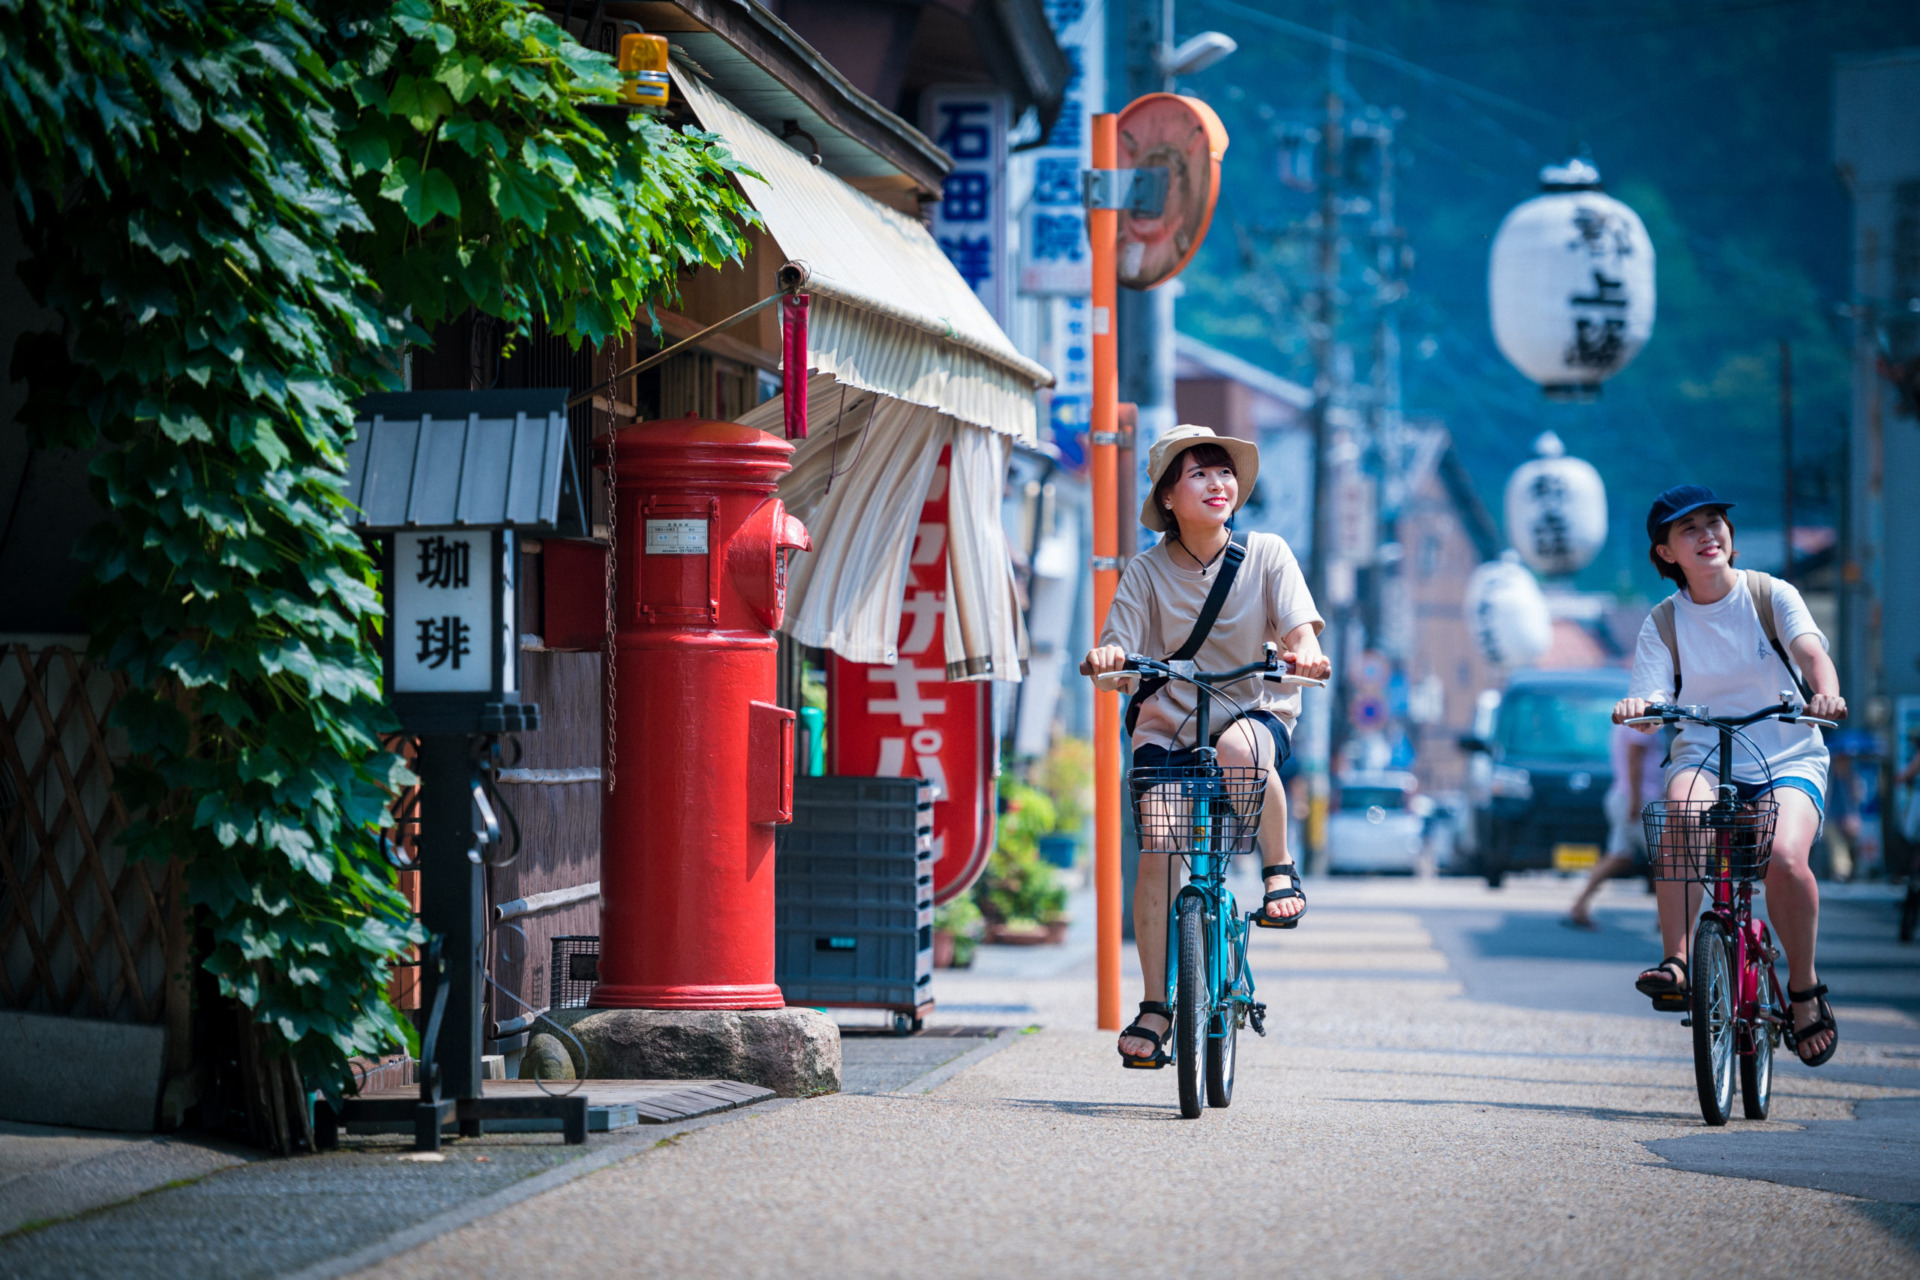 Nagaragawa Cycling Cruise, riding across the town and along Nagaragawa River